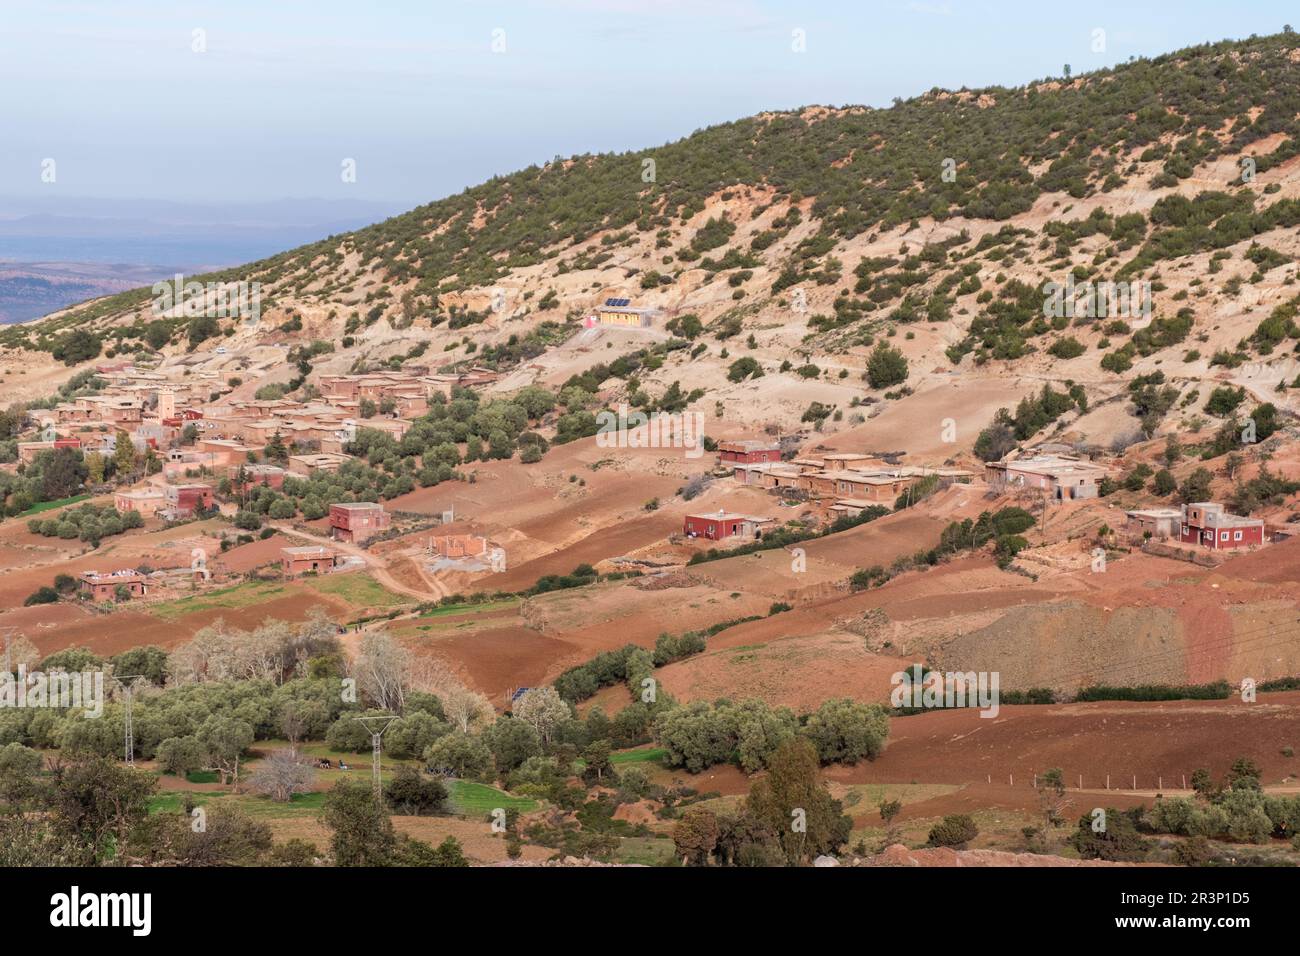 Vista panoramica delle montagne dell'Atlante in Marocco e delle sue strade curve Foto Stock